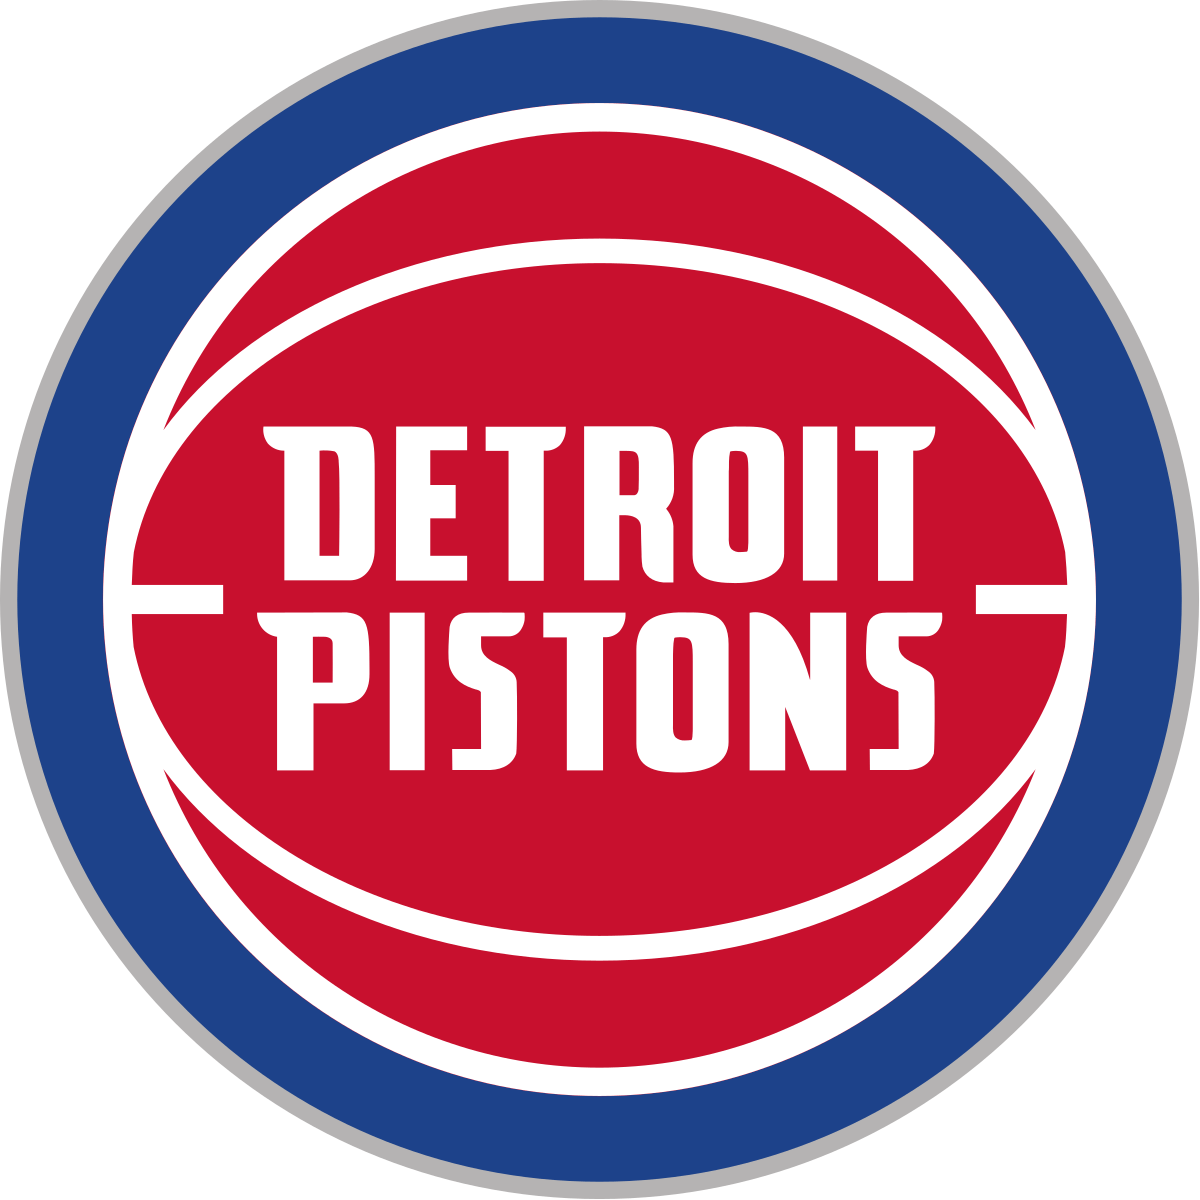 Liste des Detroit Pistons 2021: à quoi ressemble l'équipe après tous les métiers et les signatures d'agences gratuites